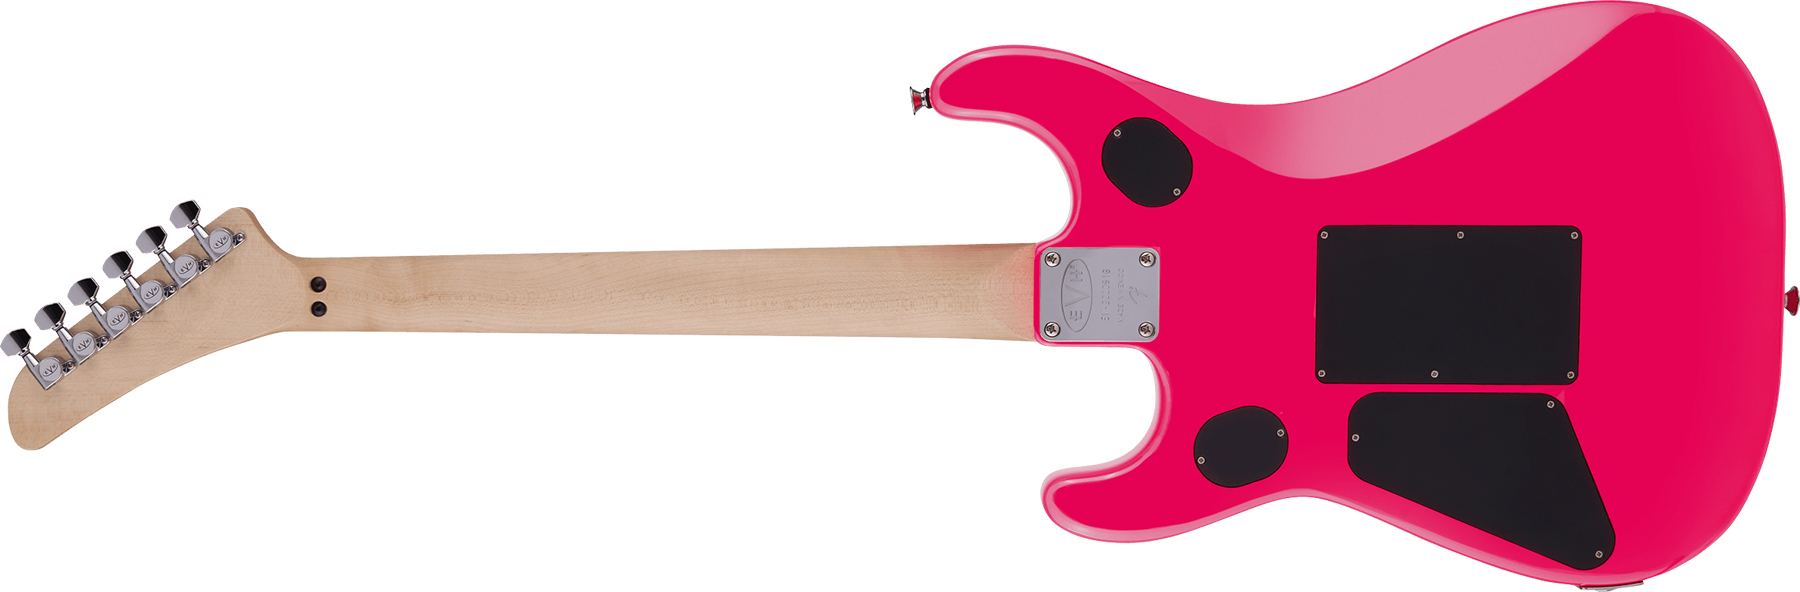 Evh 5150 Standard Mex 2h Fr Mn - Neon Pink - Str shape electric guitar - Variation 1